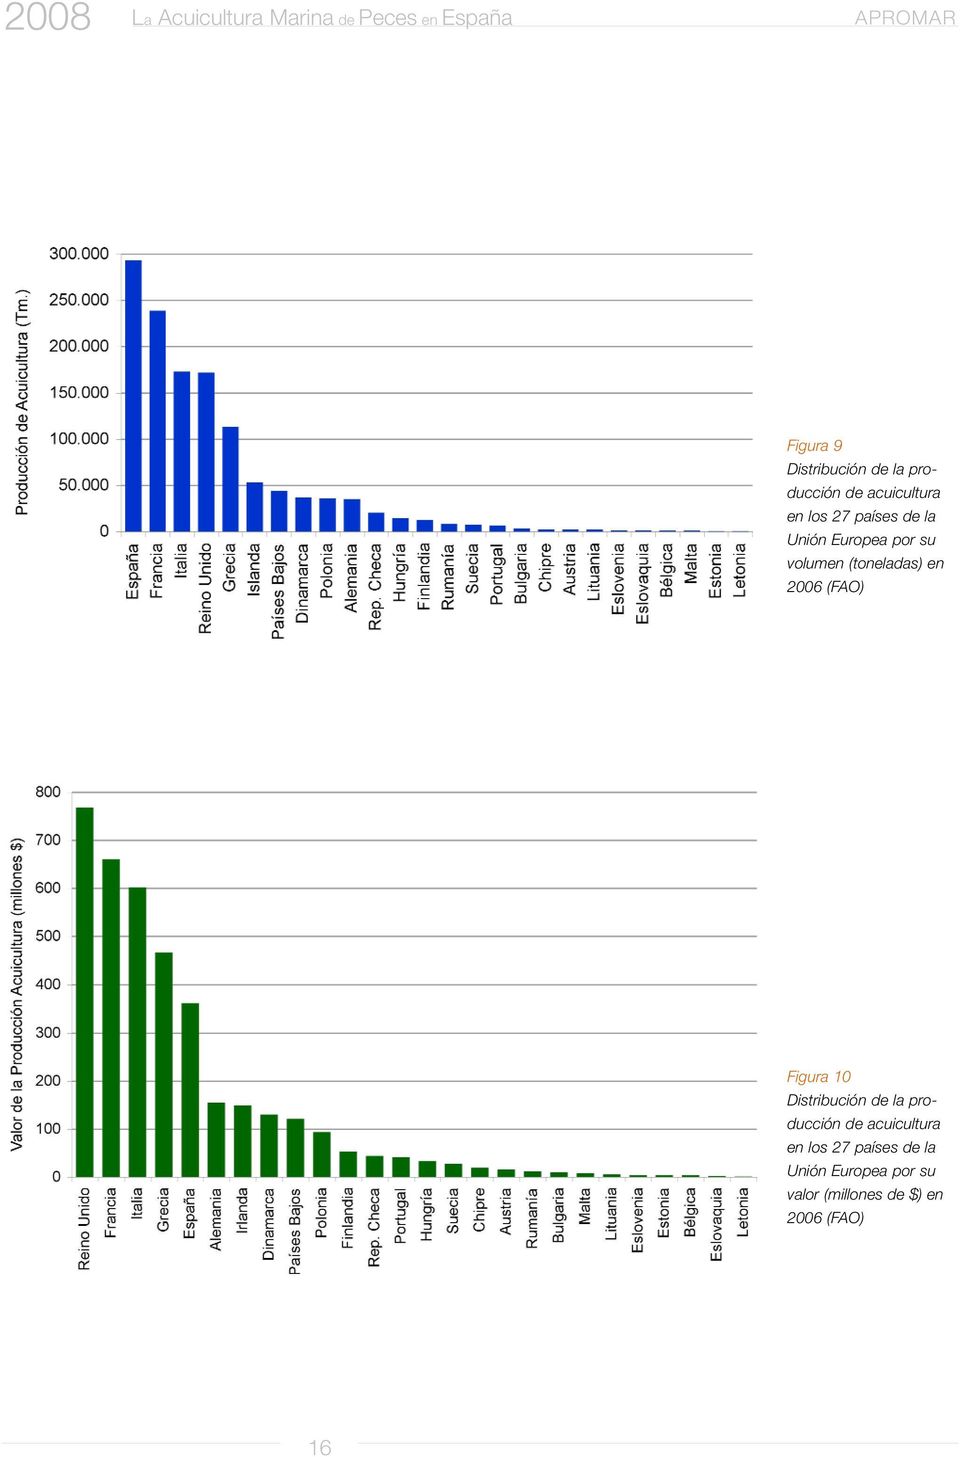 (toneladas) en 2006 (FAO) Figura 10 Distribución de la producción de acuicultura